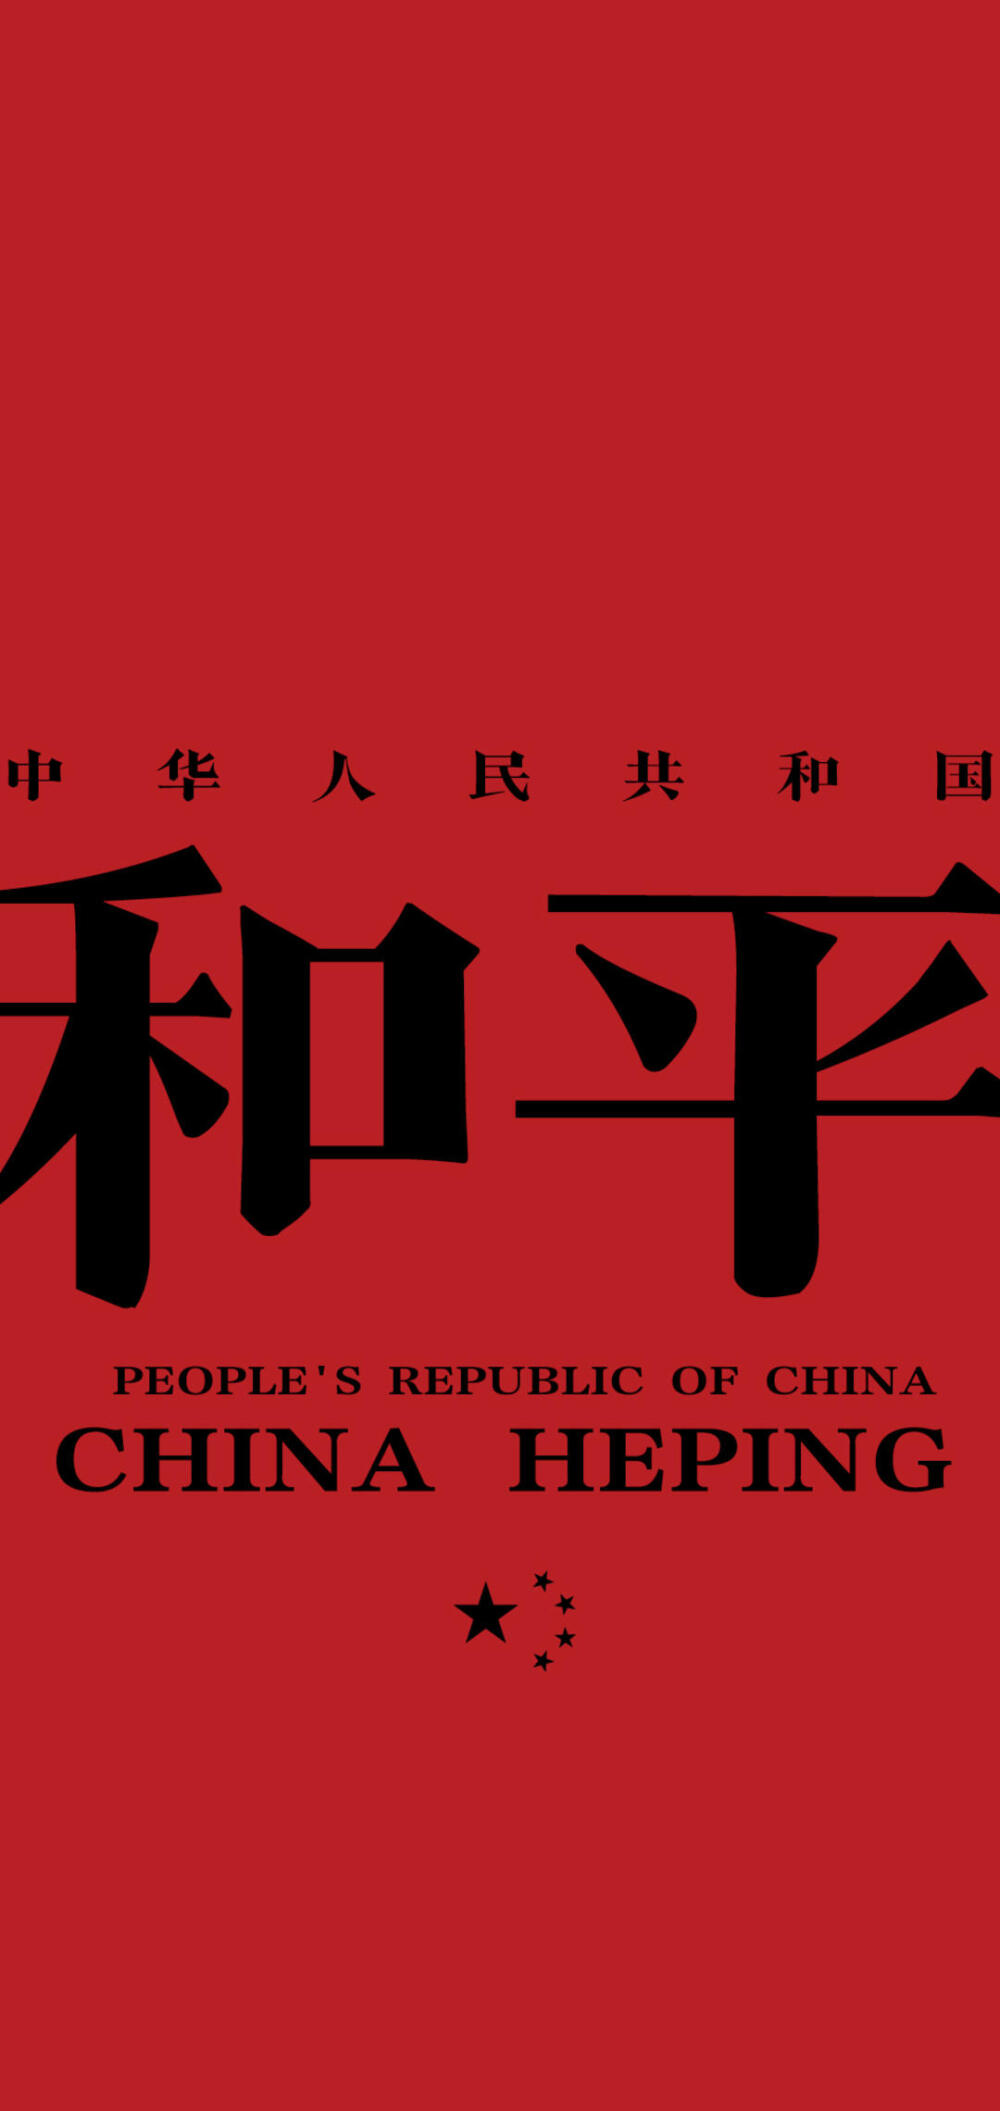 正气满满
红色系壁纸系列
中国